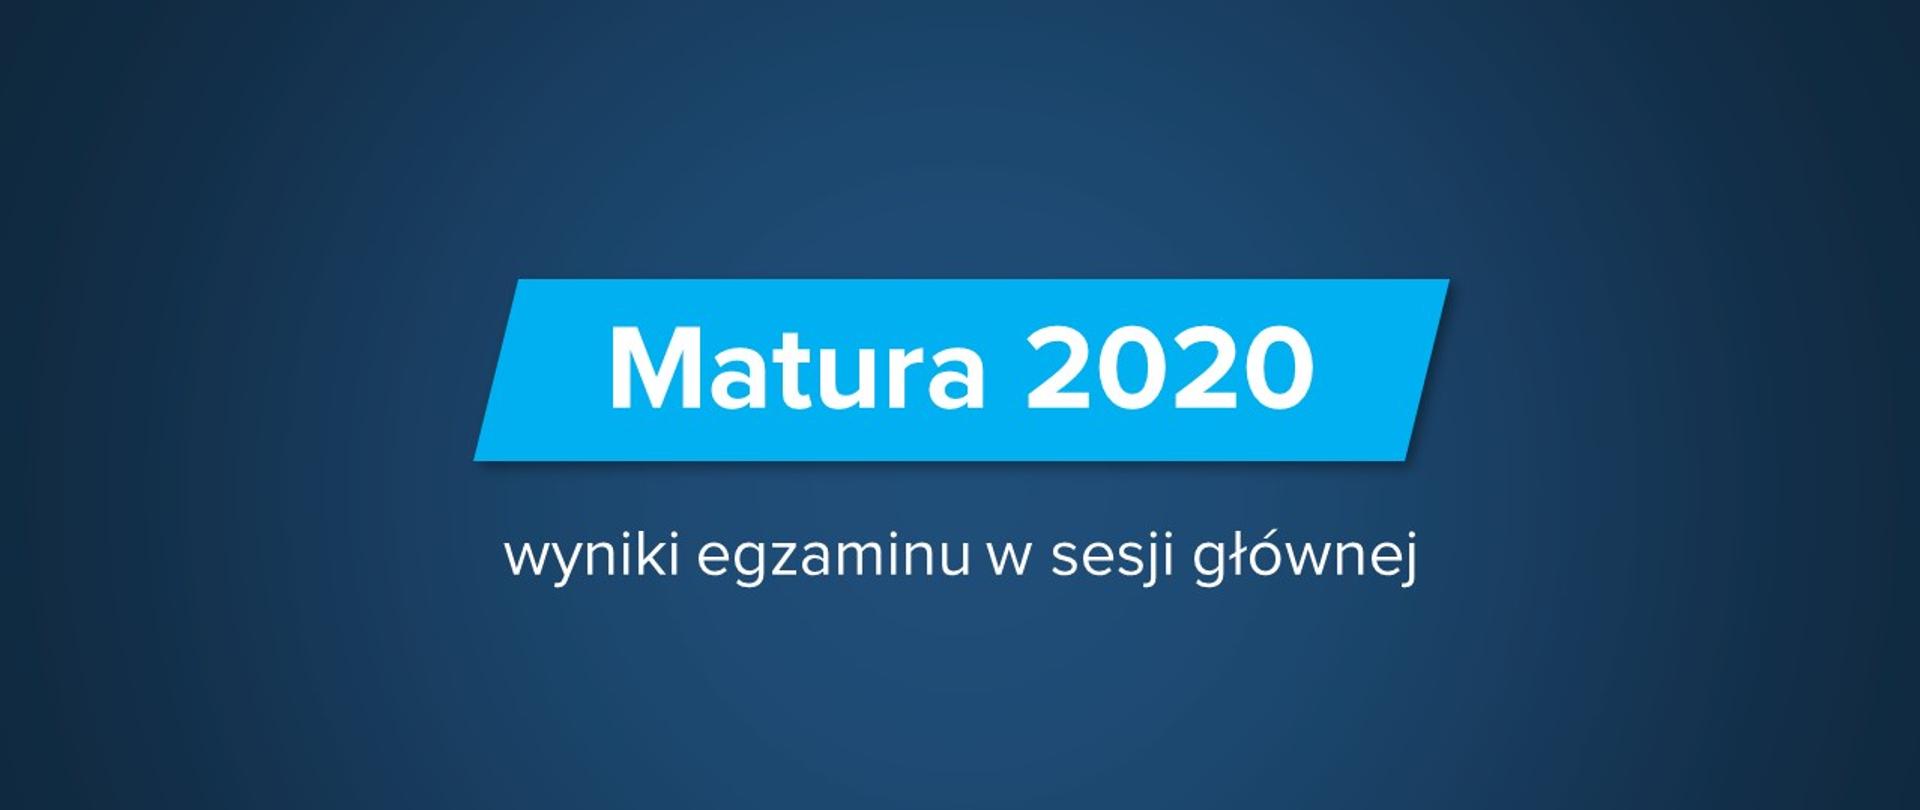 Ciemnoniebieska grafika z tekstem "Matura 2020 – wyniki egzaminu w sesji głównej"